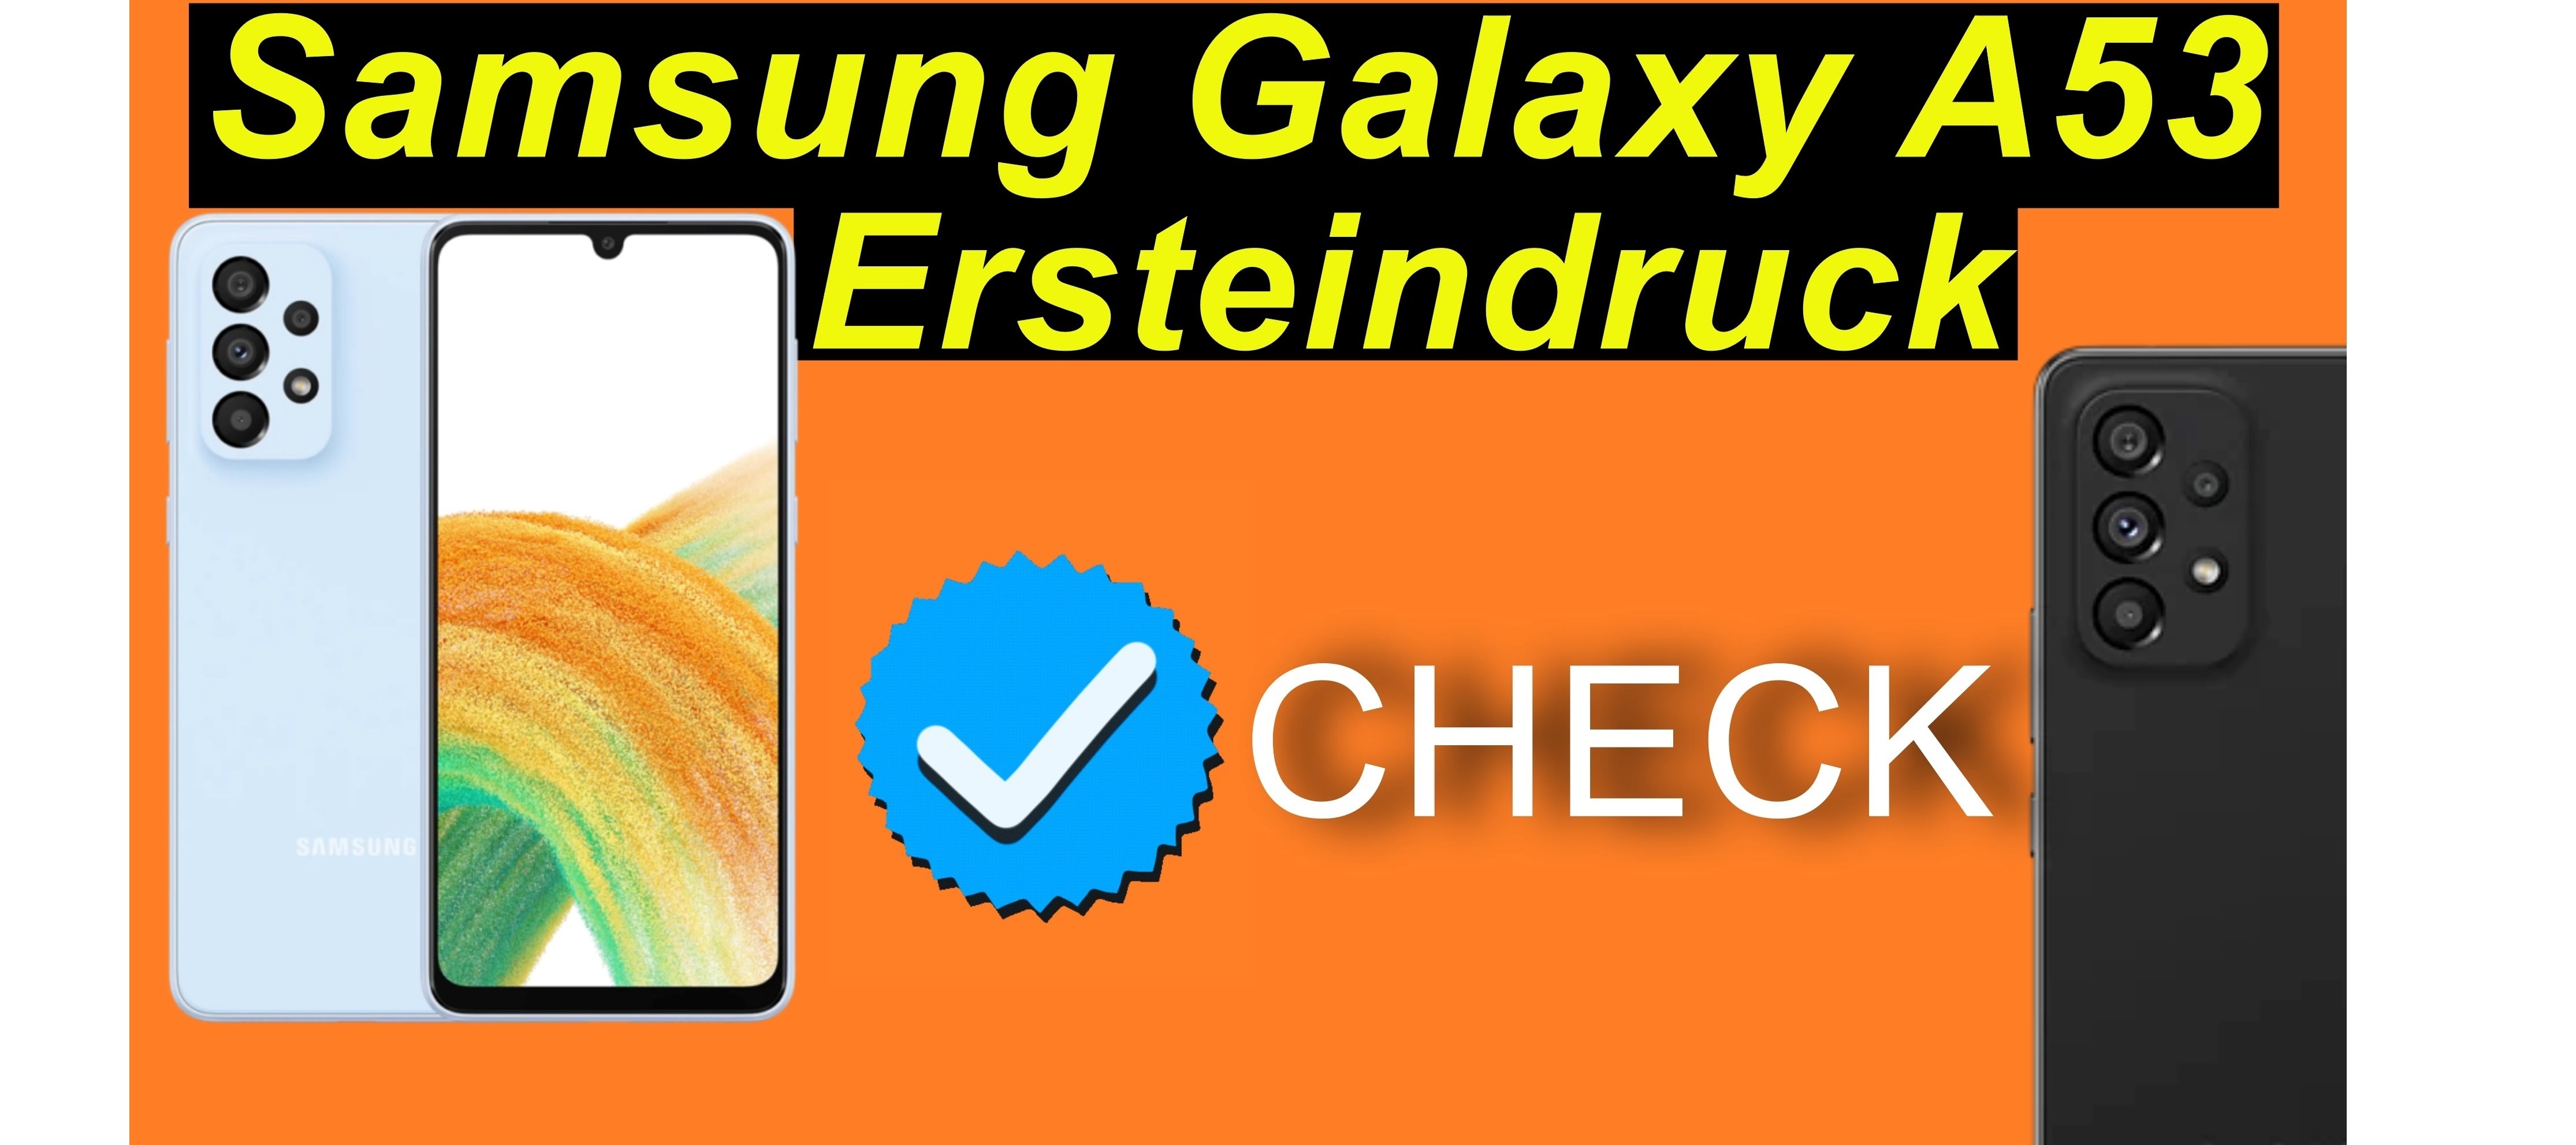 Ich habe zugeschlagen: Samsung Galaxy A53. Ersteindruck Check!